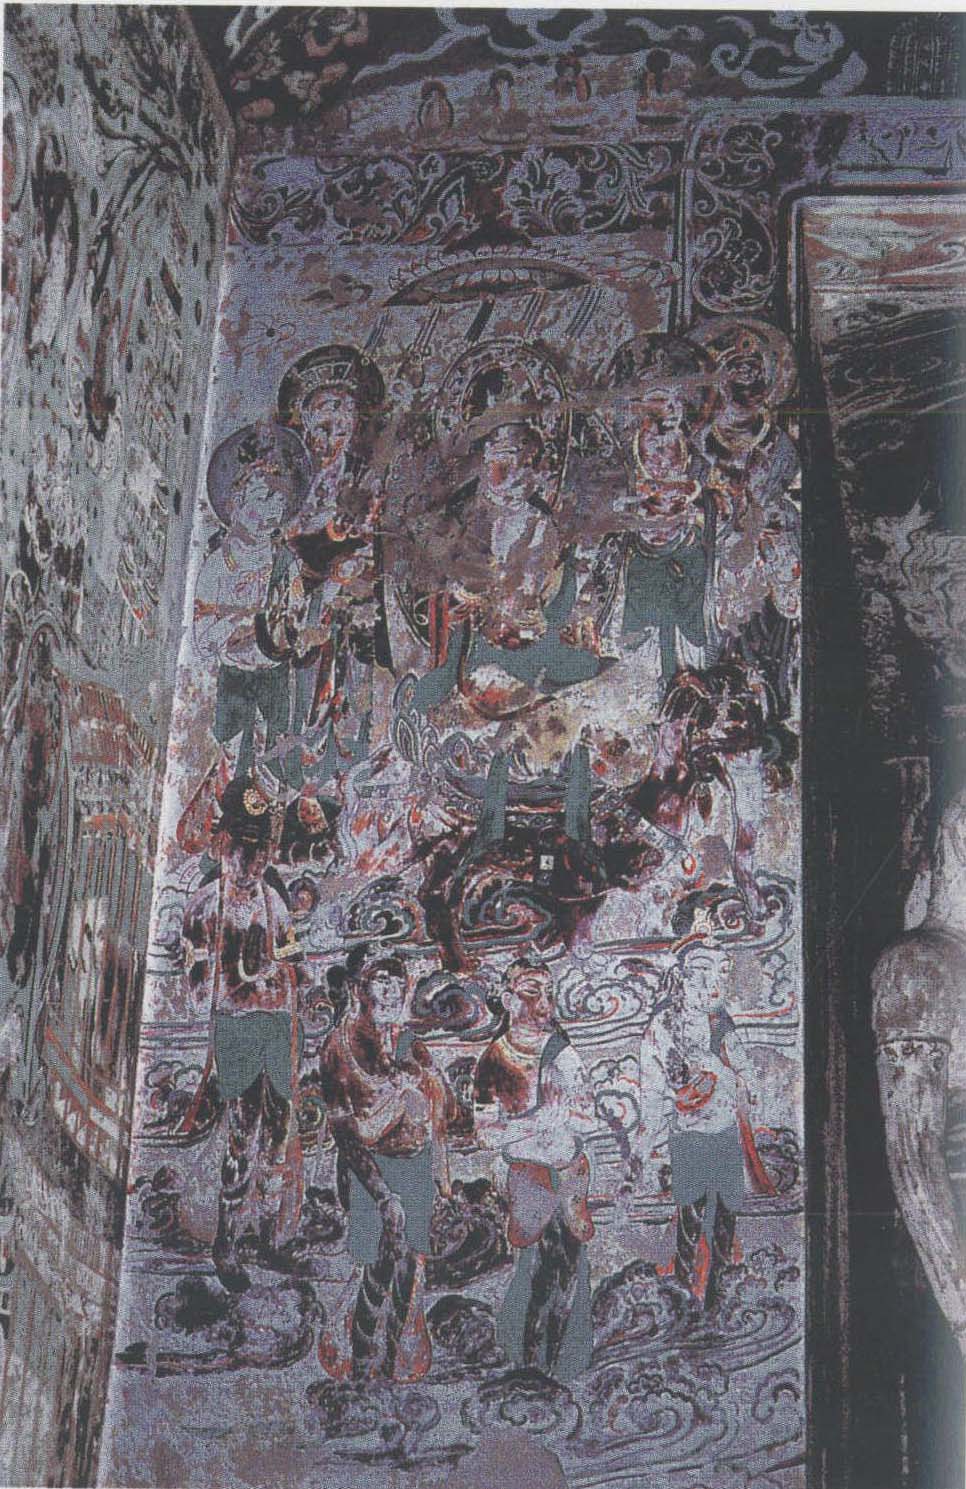 图22 莫高窟第220窟佛龛南侧骑象普贤菩萨图贞观十六年(642)